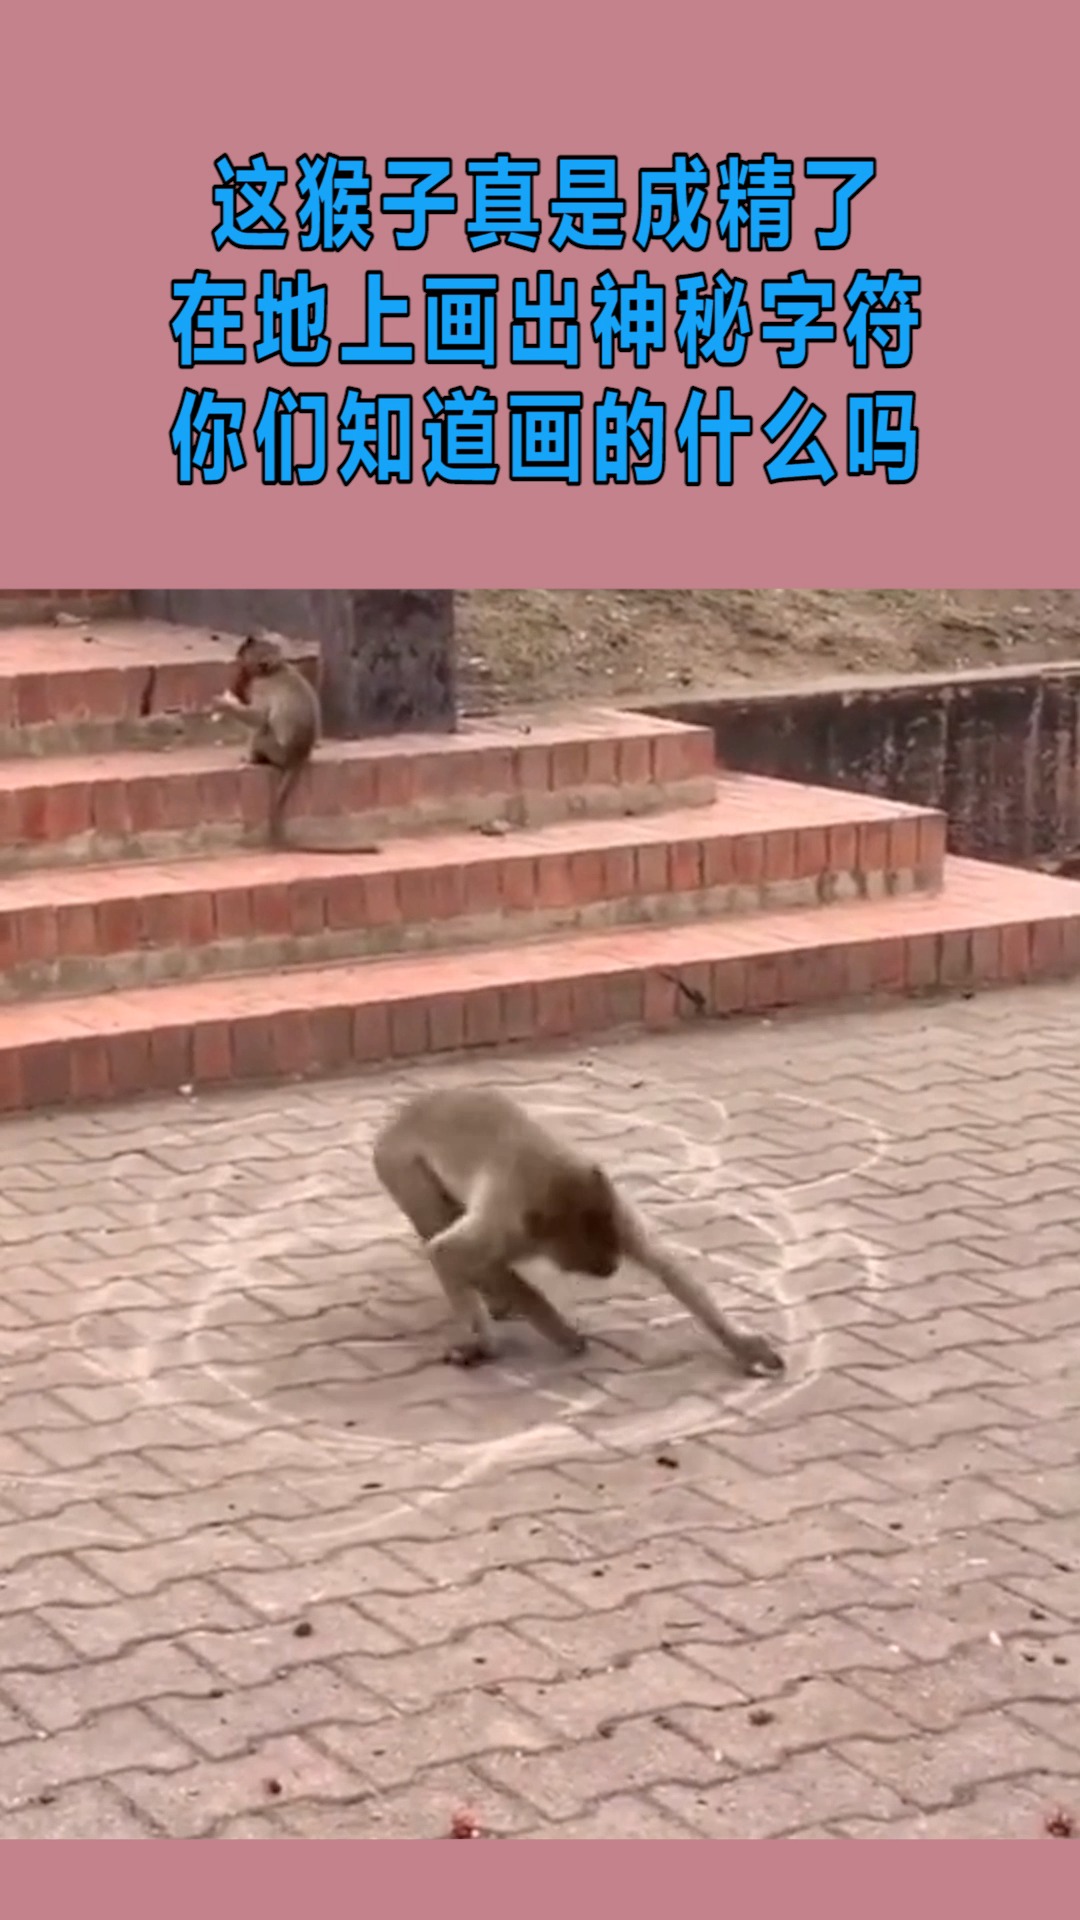 我搞笑你开心这猴子真是成精了在地上画出神秘字符你们知道画的什么吗